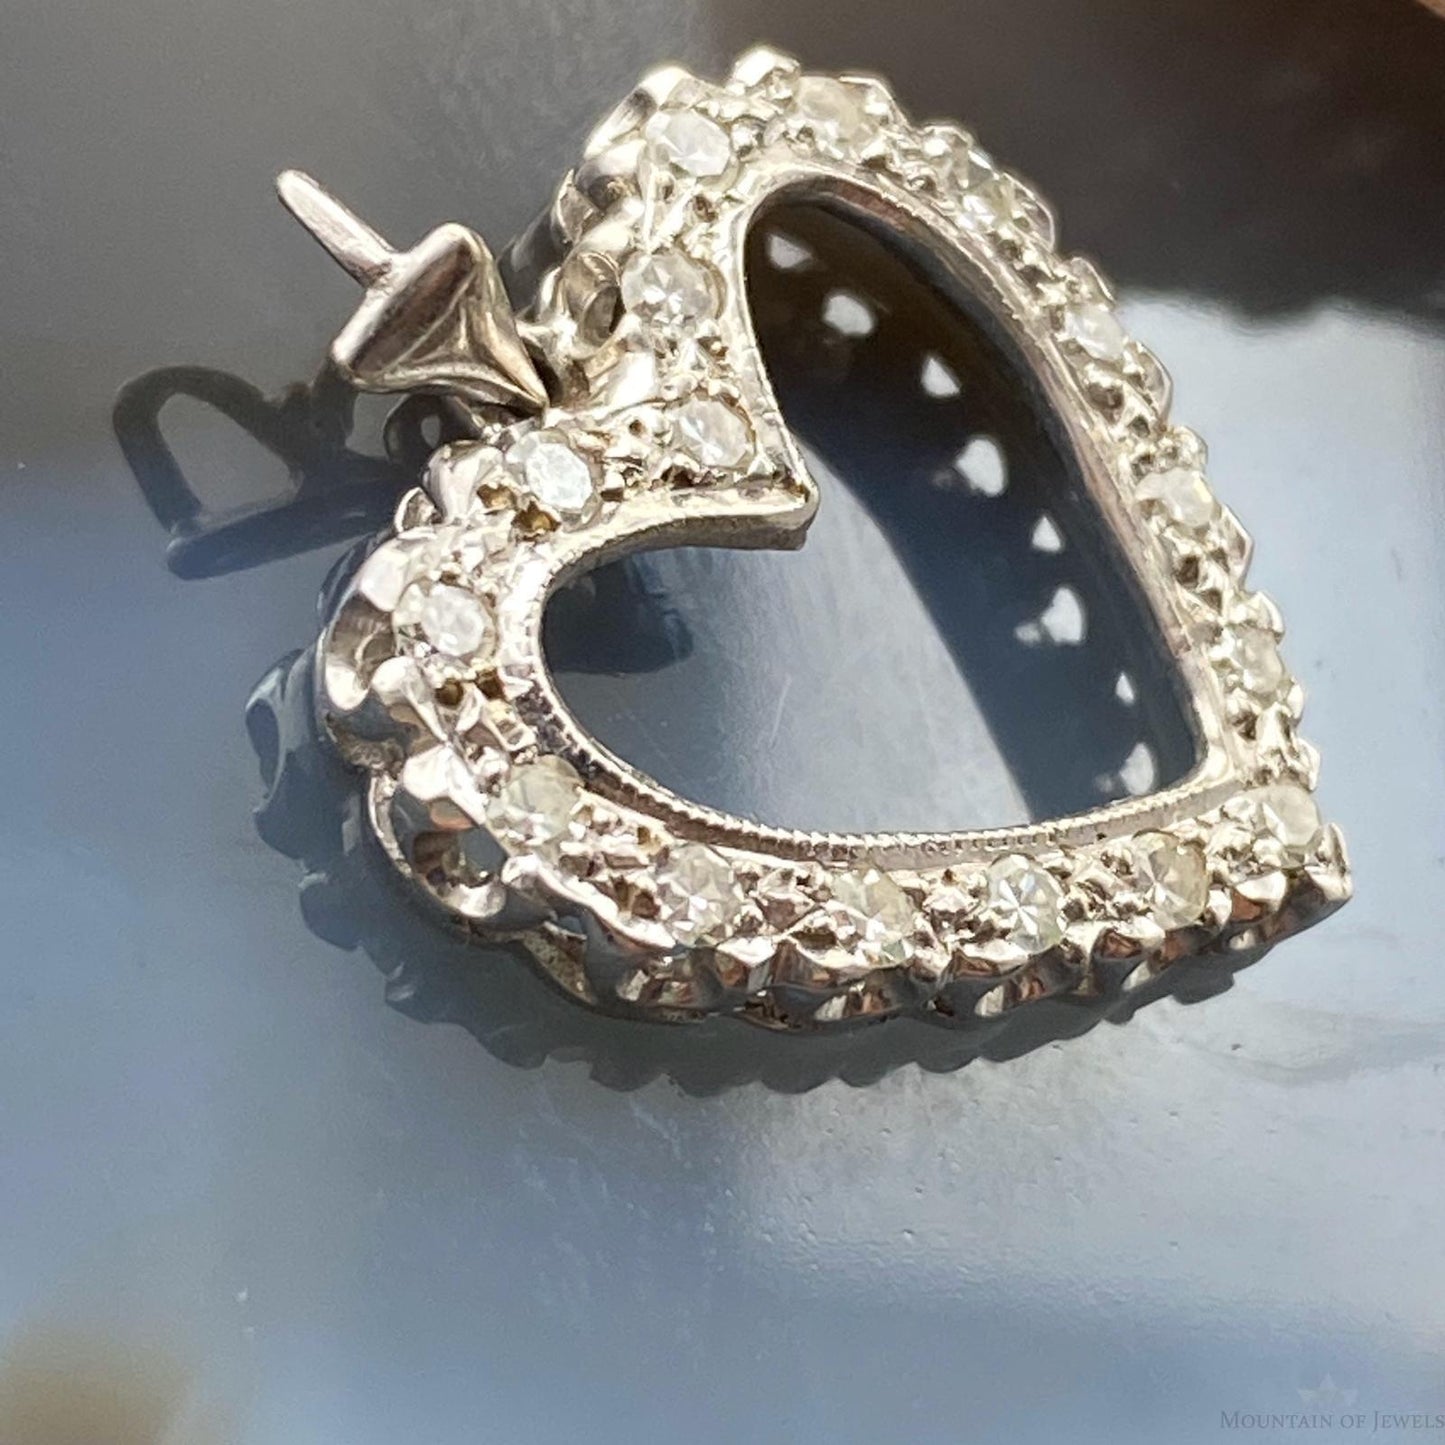 10K White Gold Diamonds Heart Shape Pendant For Women